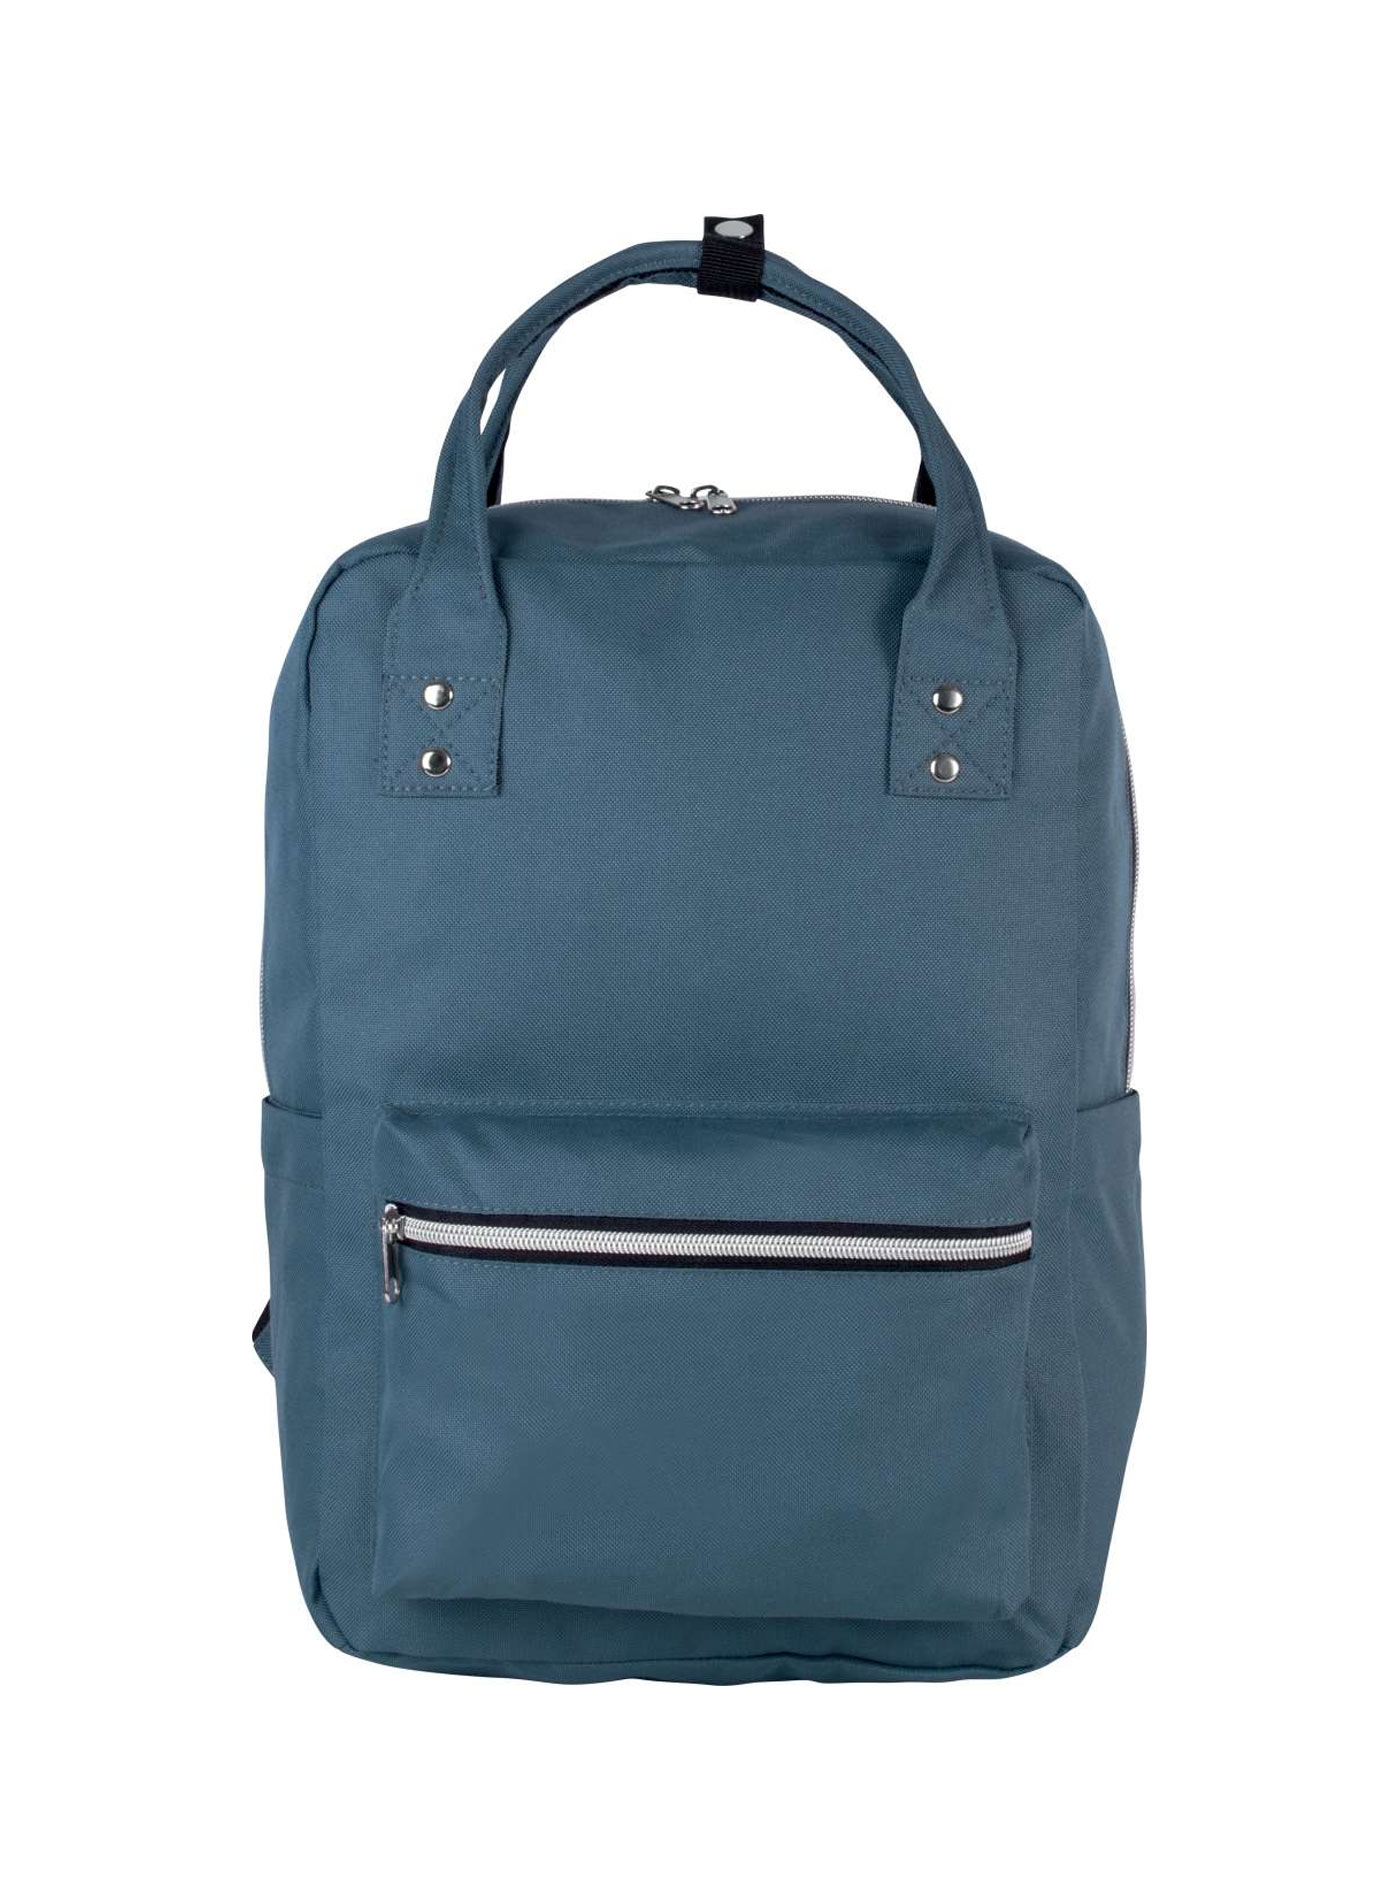 Batoh Kimood Handbag - Ocelově modrá univerzal